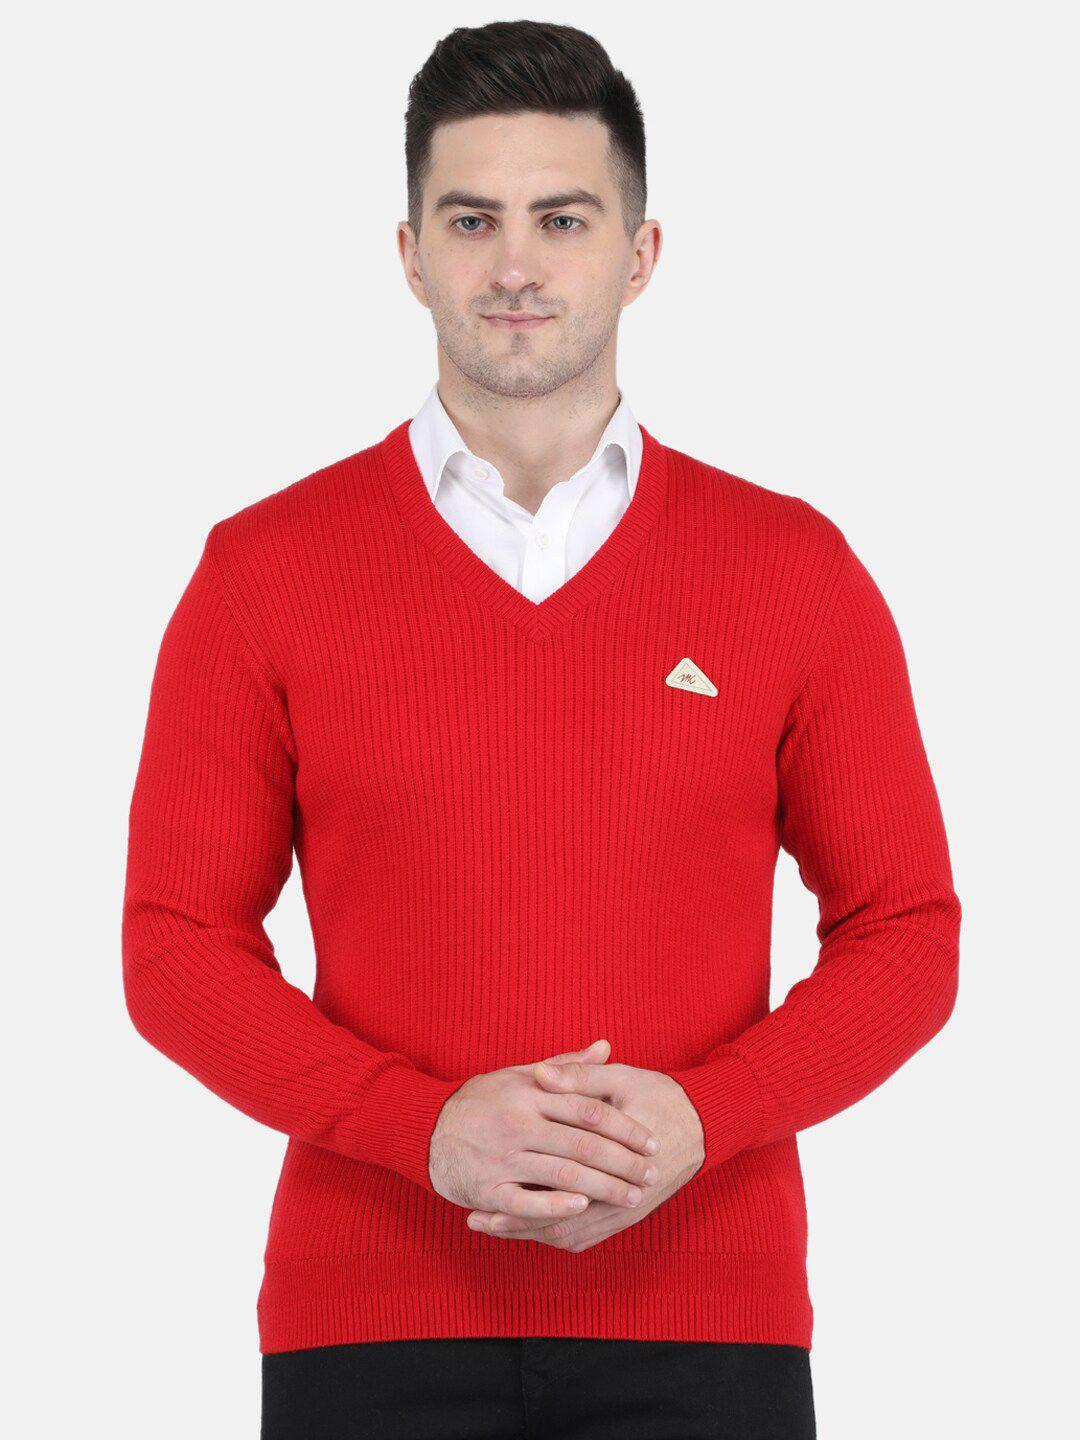 monte-carlo-men-red-striped-striped-pullover-sweater